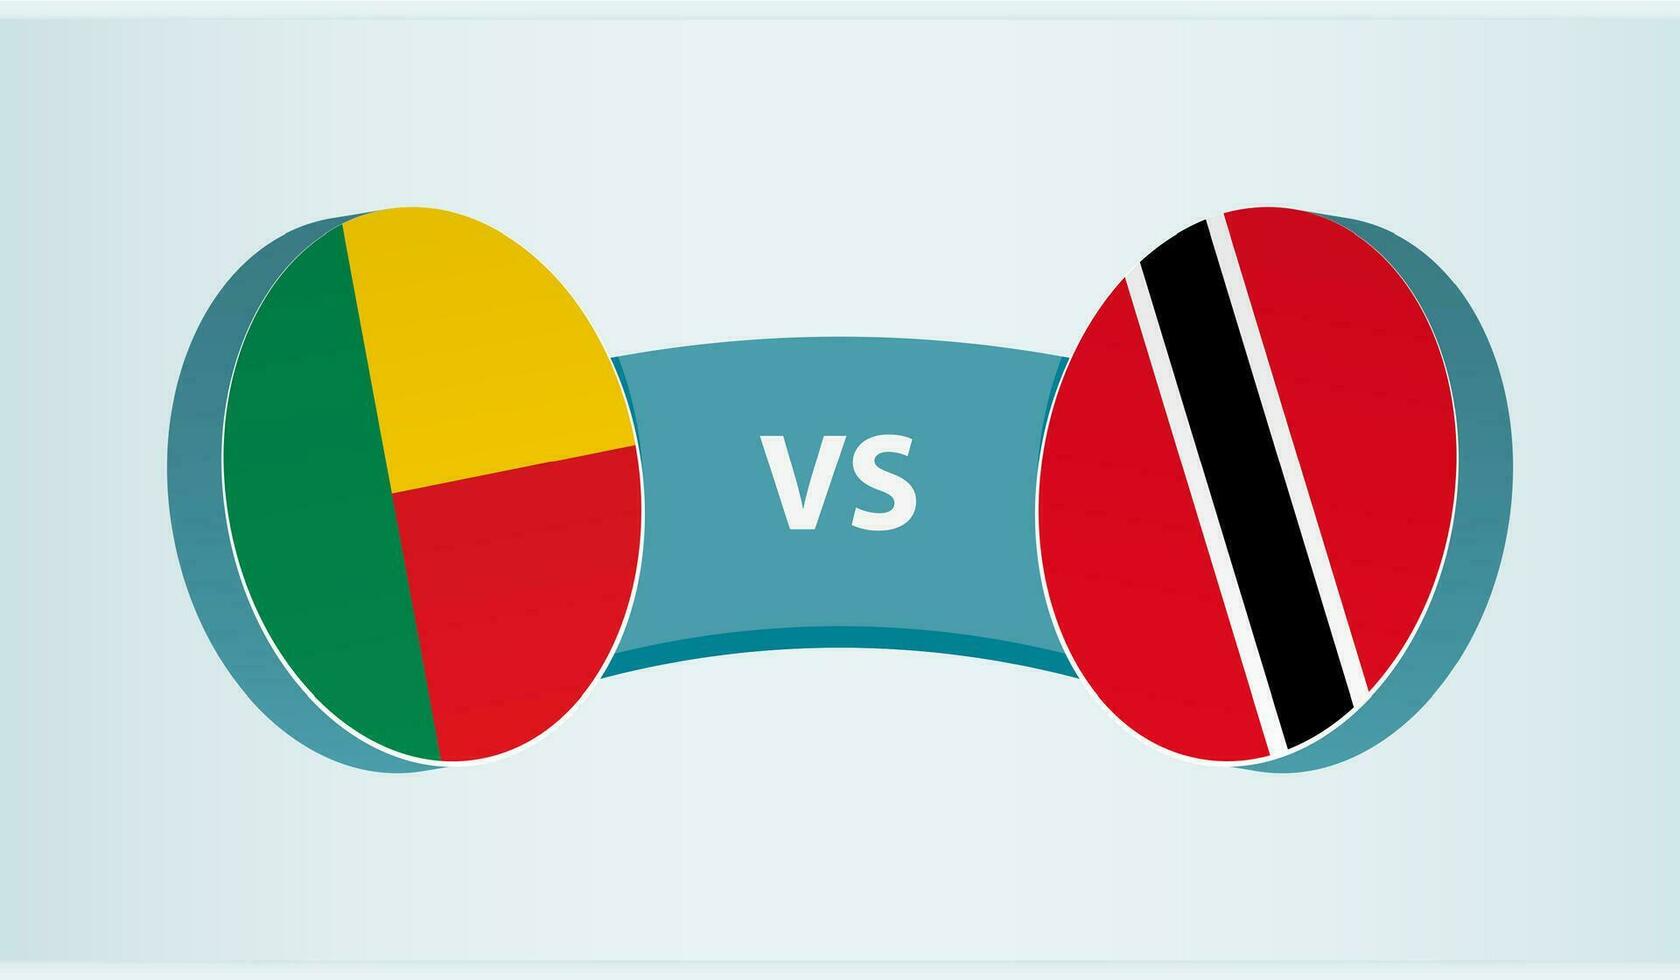 benin versus trinidad e Tobago, equipe Esportes concorrência conceito. vetor